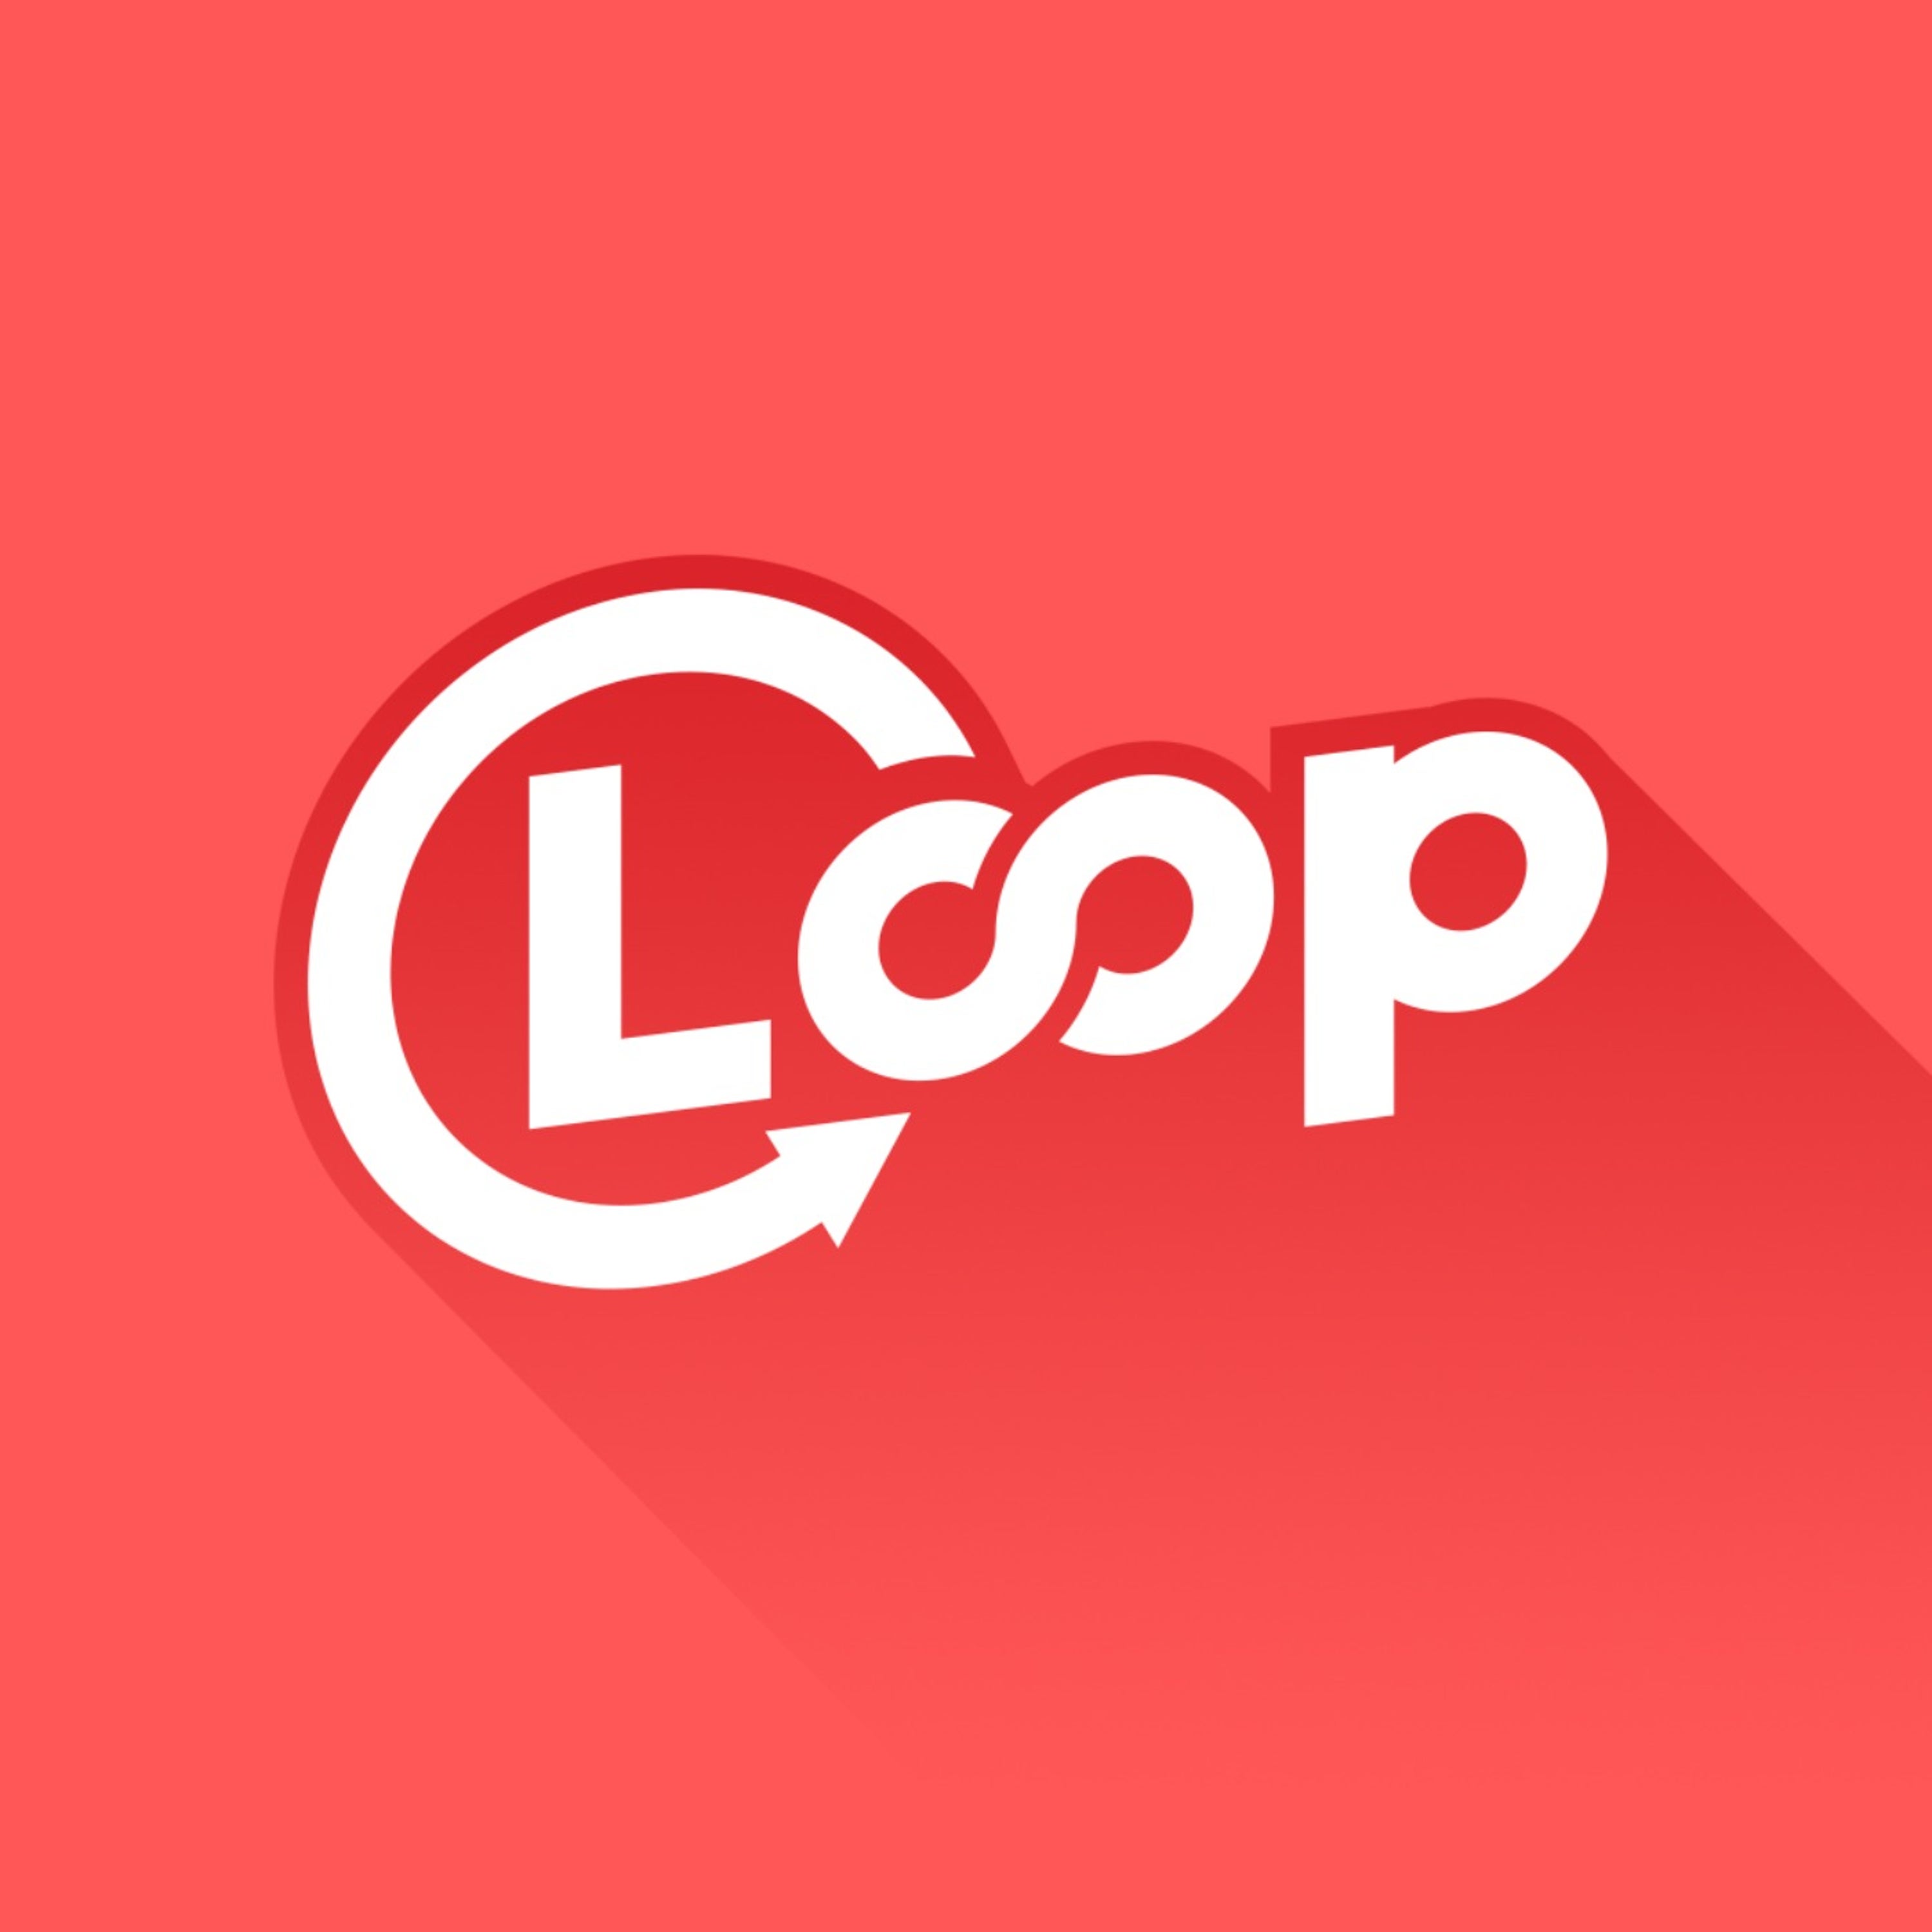 Loop #4 - La Tierlist des métas YouTube avec YassEncore, Maxime Biaggi et Joël